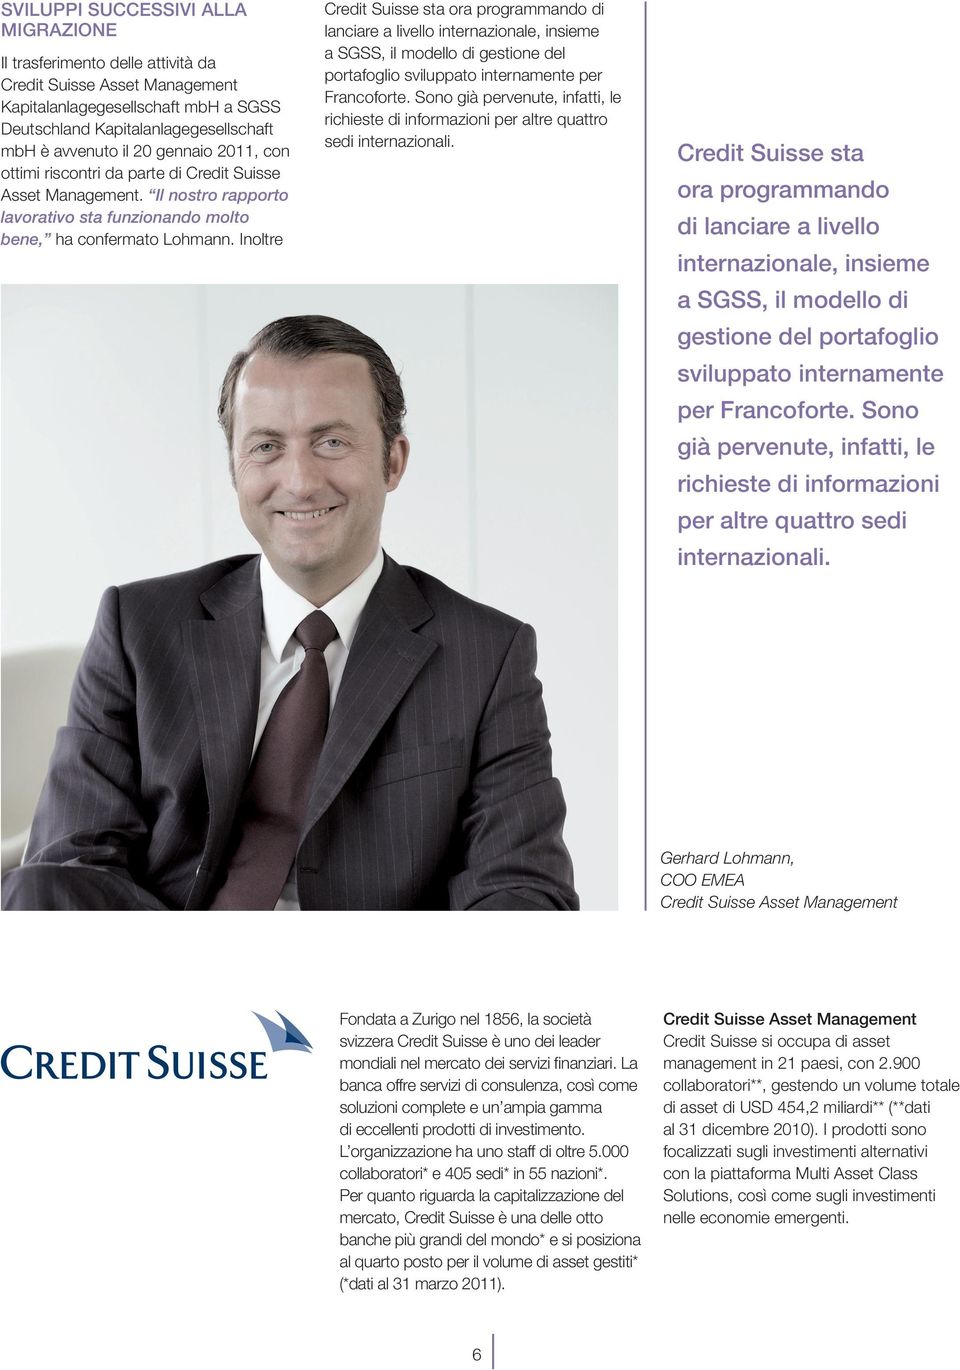 Inoltre Credit Suisse sta ora programmando di lanciare a livello internazionale, insieme a SGSS, il modello di gestione del portafoglio sviluppato internamente per Francoforte.